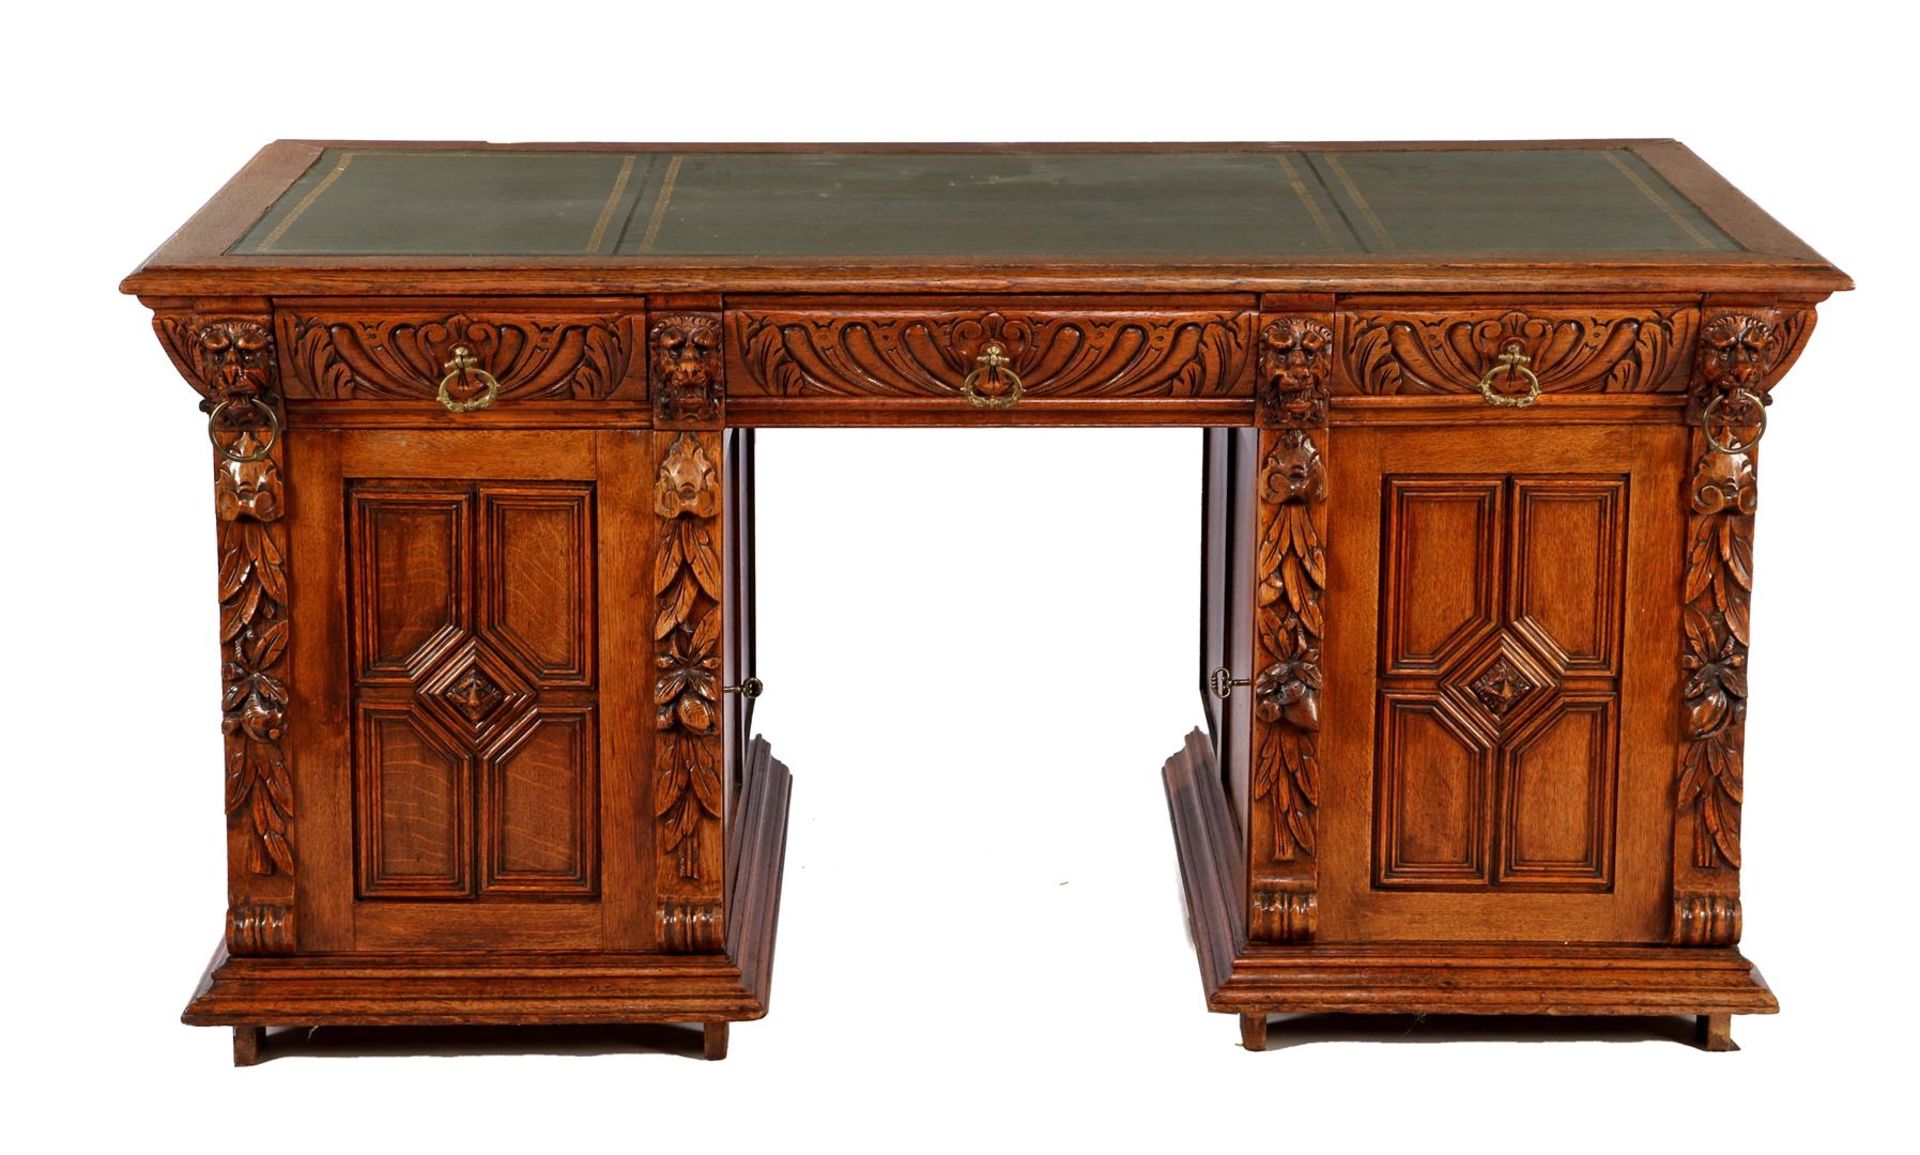 3-part oak desk